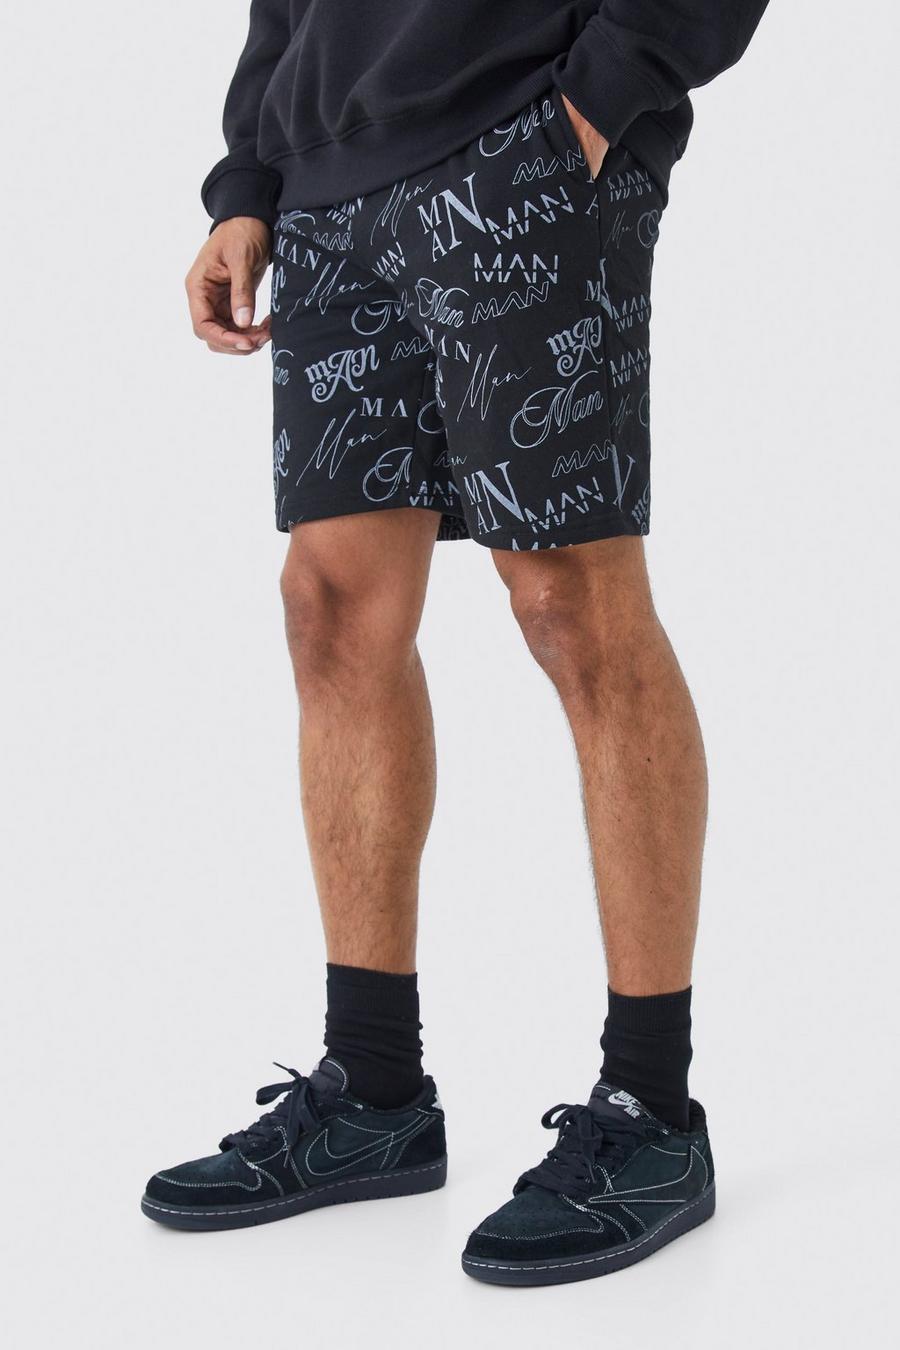 Lockere Man-Shorts mit Graffiti-Print, Black